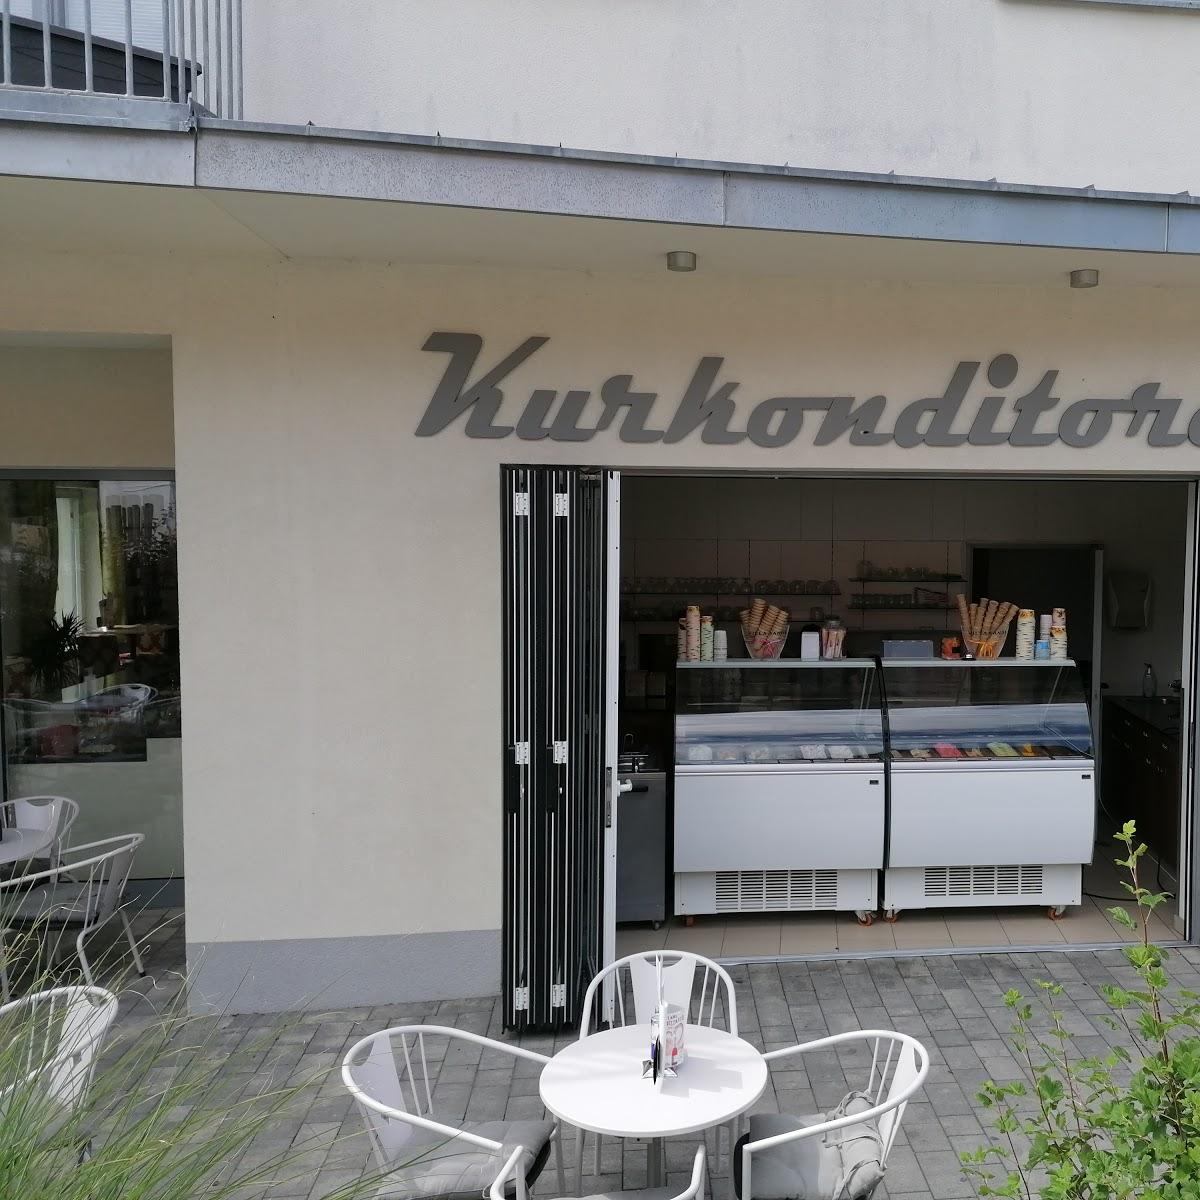 Restaurant "Kurkonditorei" in Bad Schönau